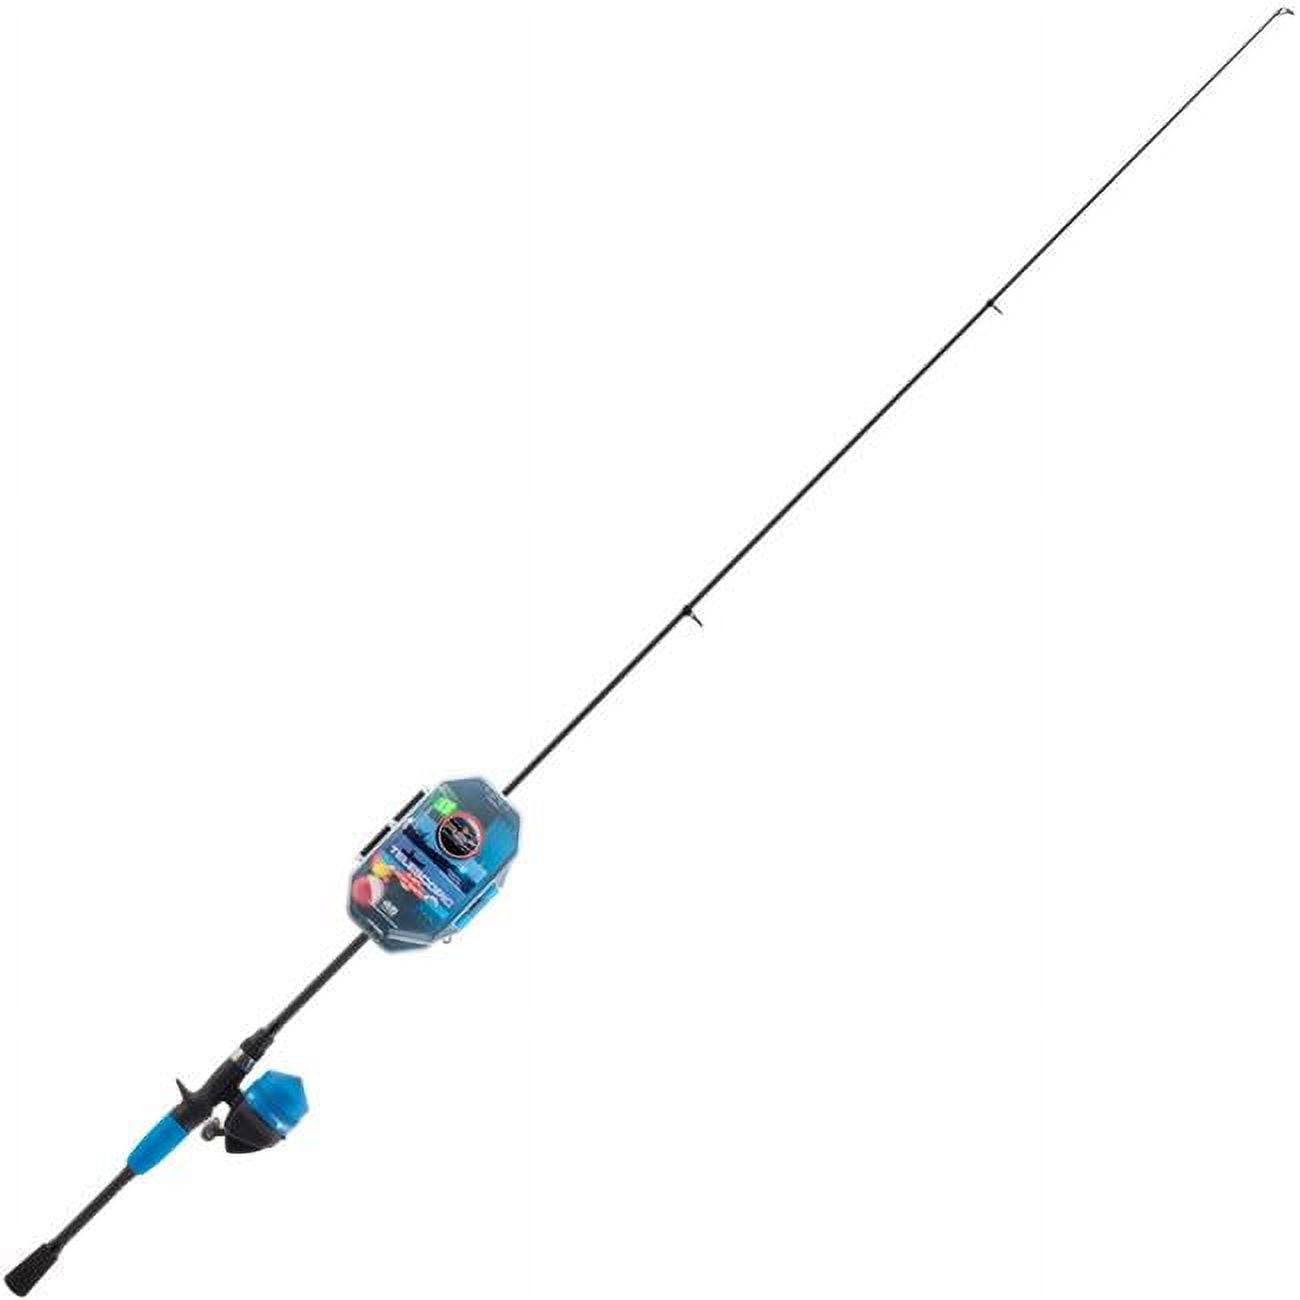 Catfish Pro Fishing For Fun 500 Round Baitcasting Fishing Reel